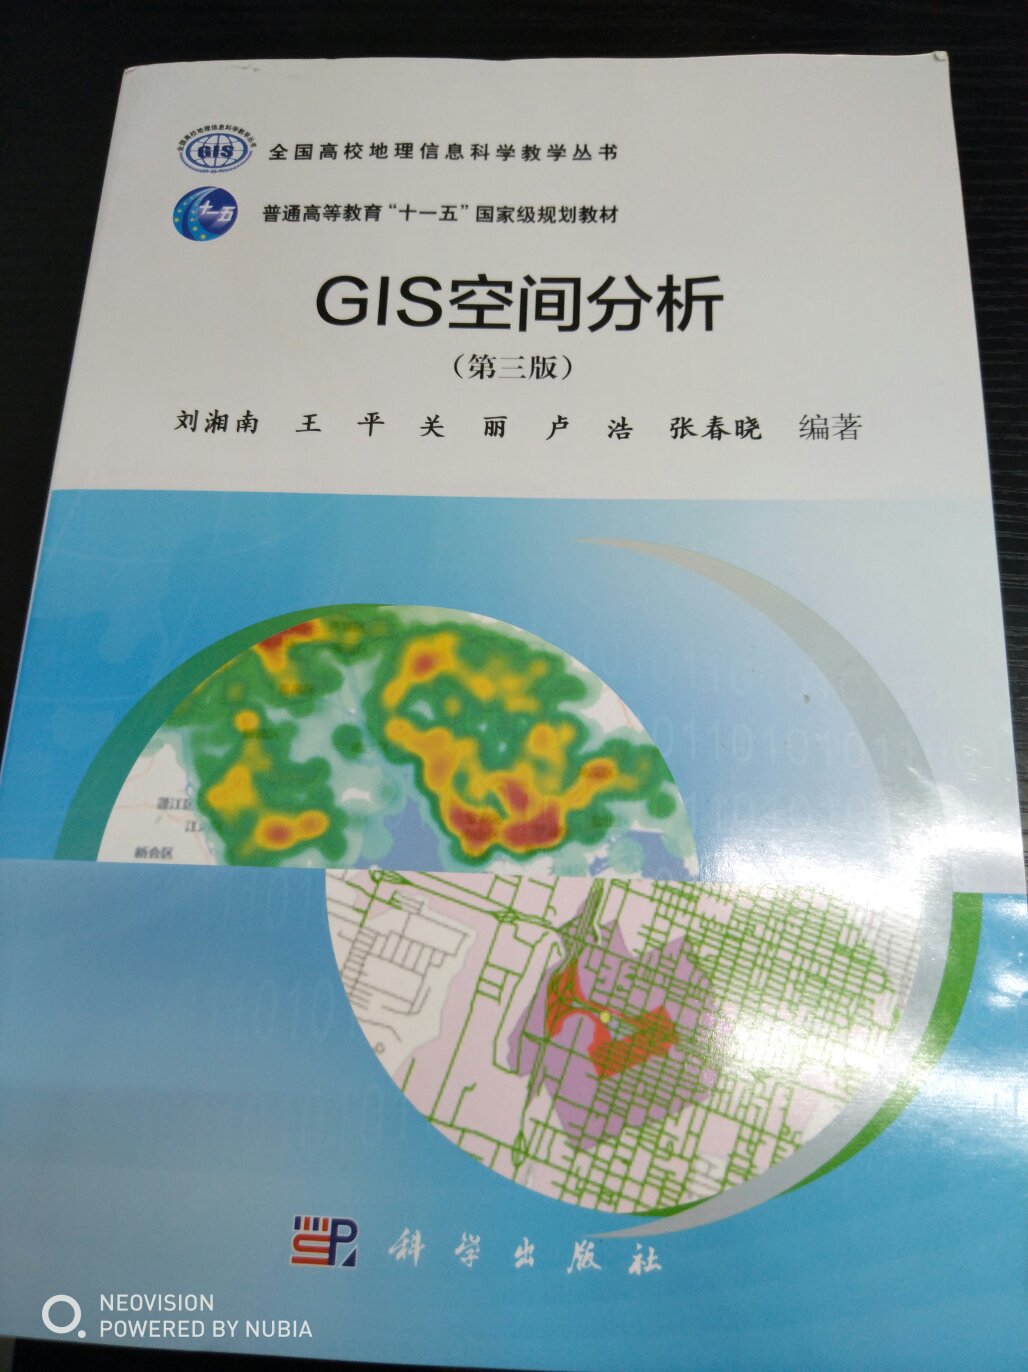 关于GIS空间分析的内容很丰富，值得一读，物流也是快的。